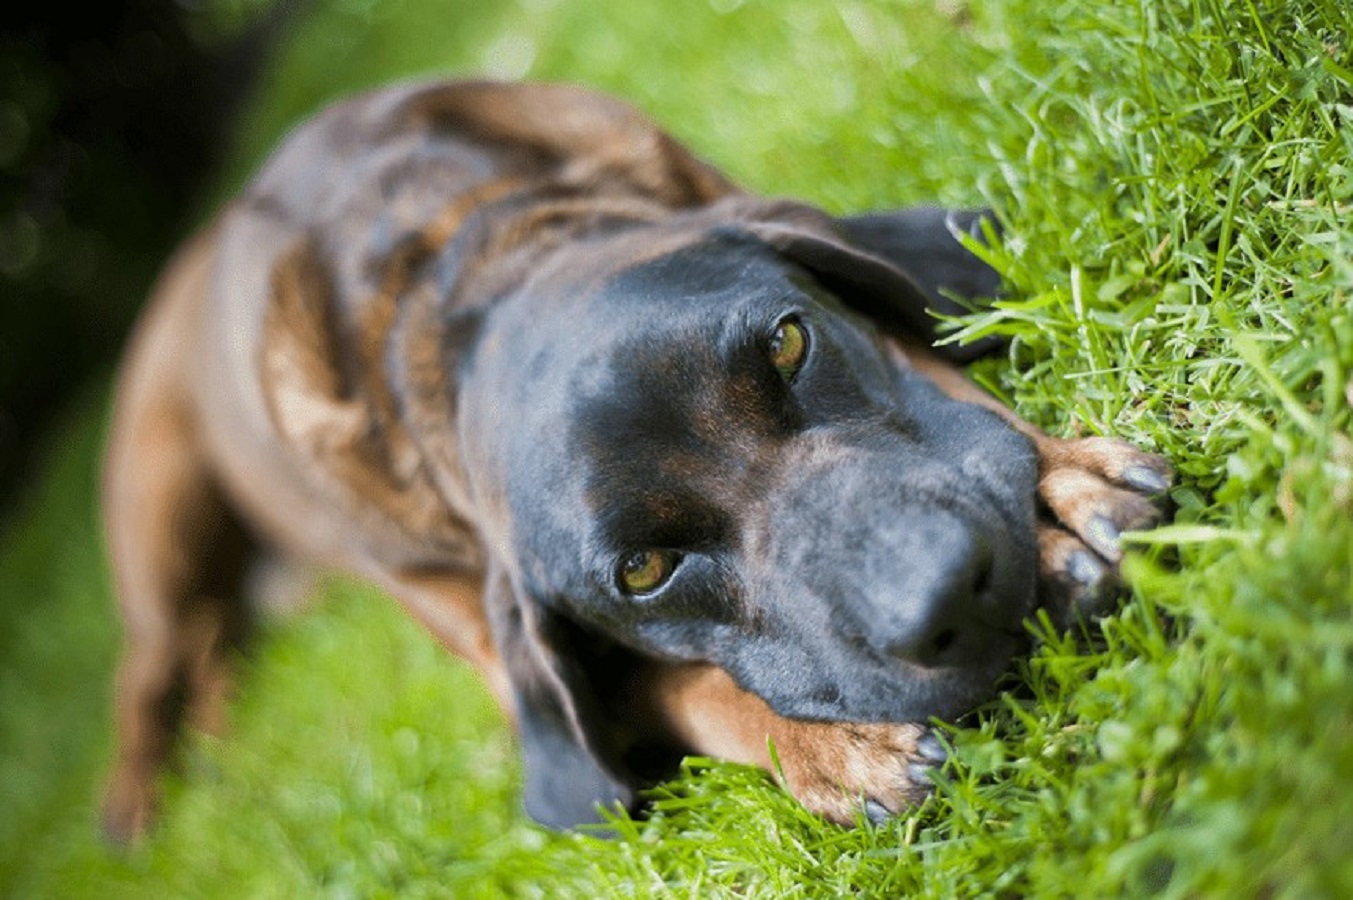 Bayerischer Gebirgsschweißhund - Preis, Temperament und Bedürfnisse